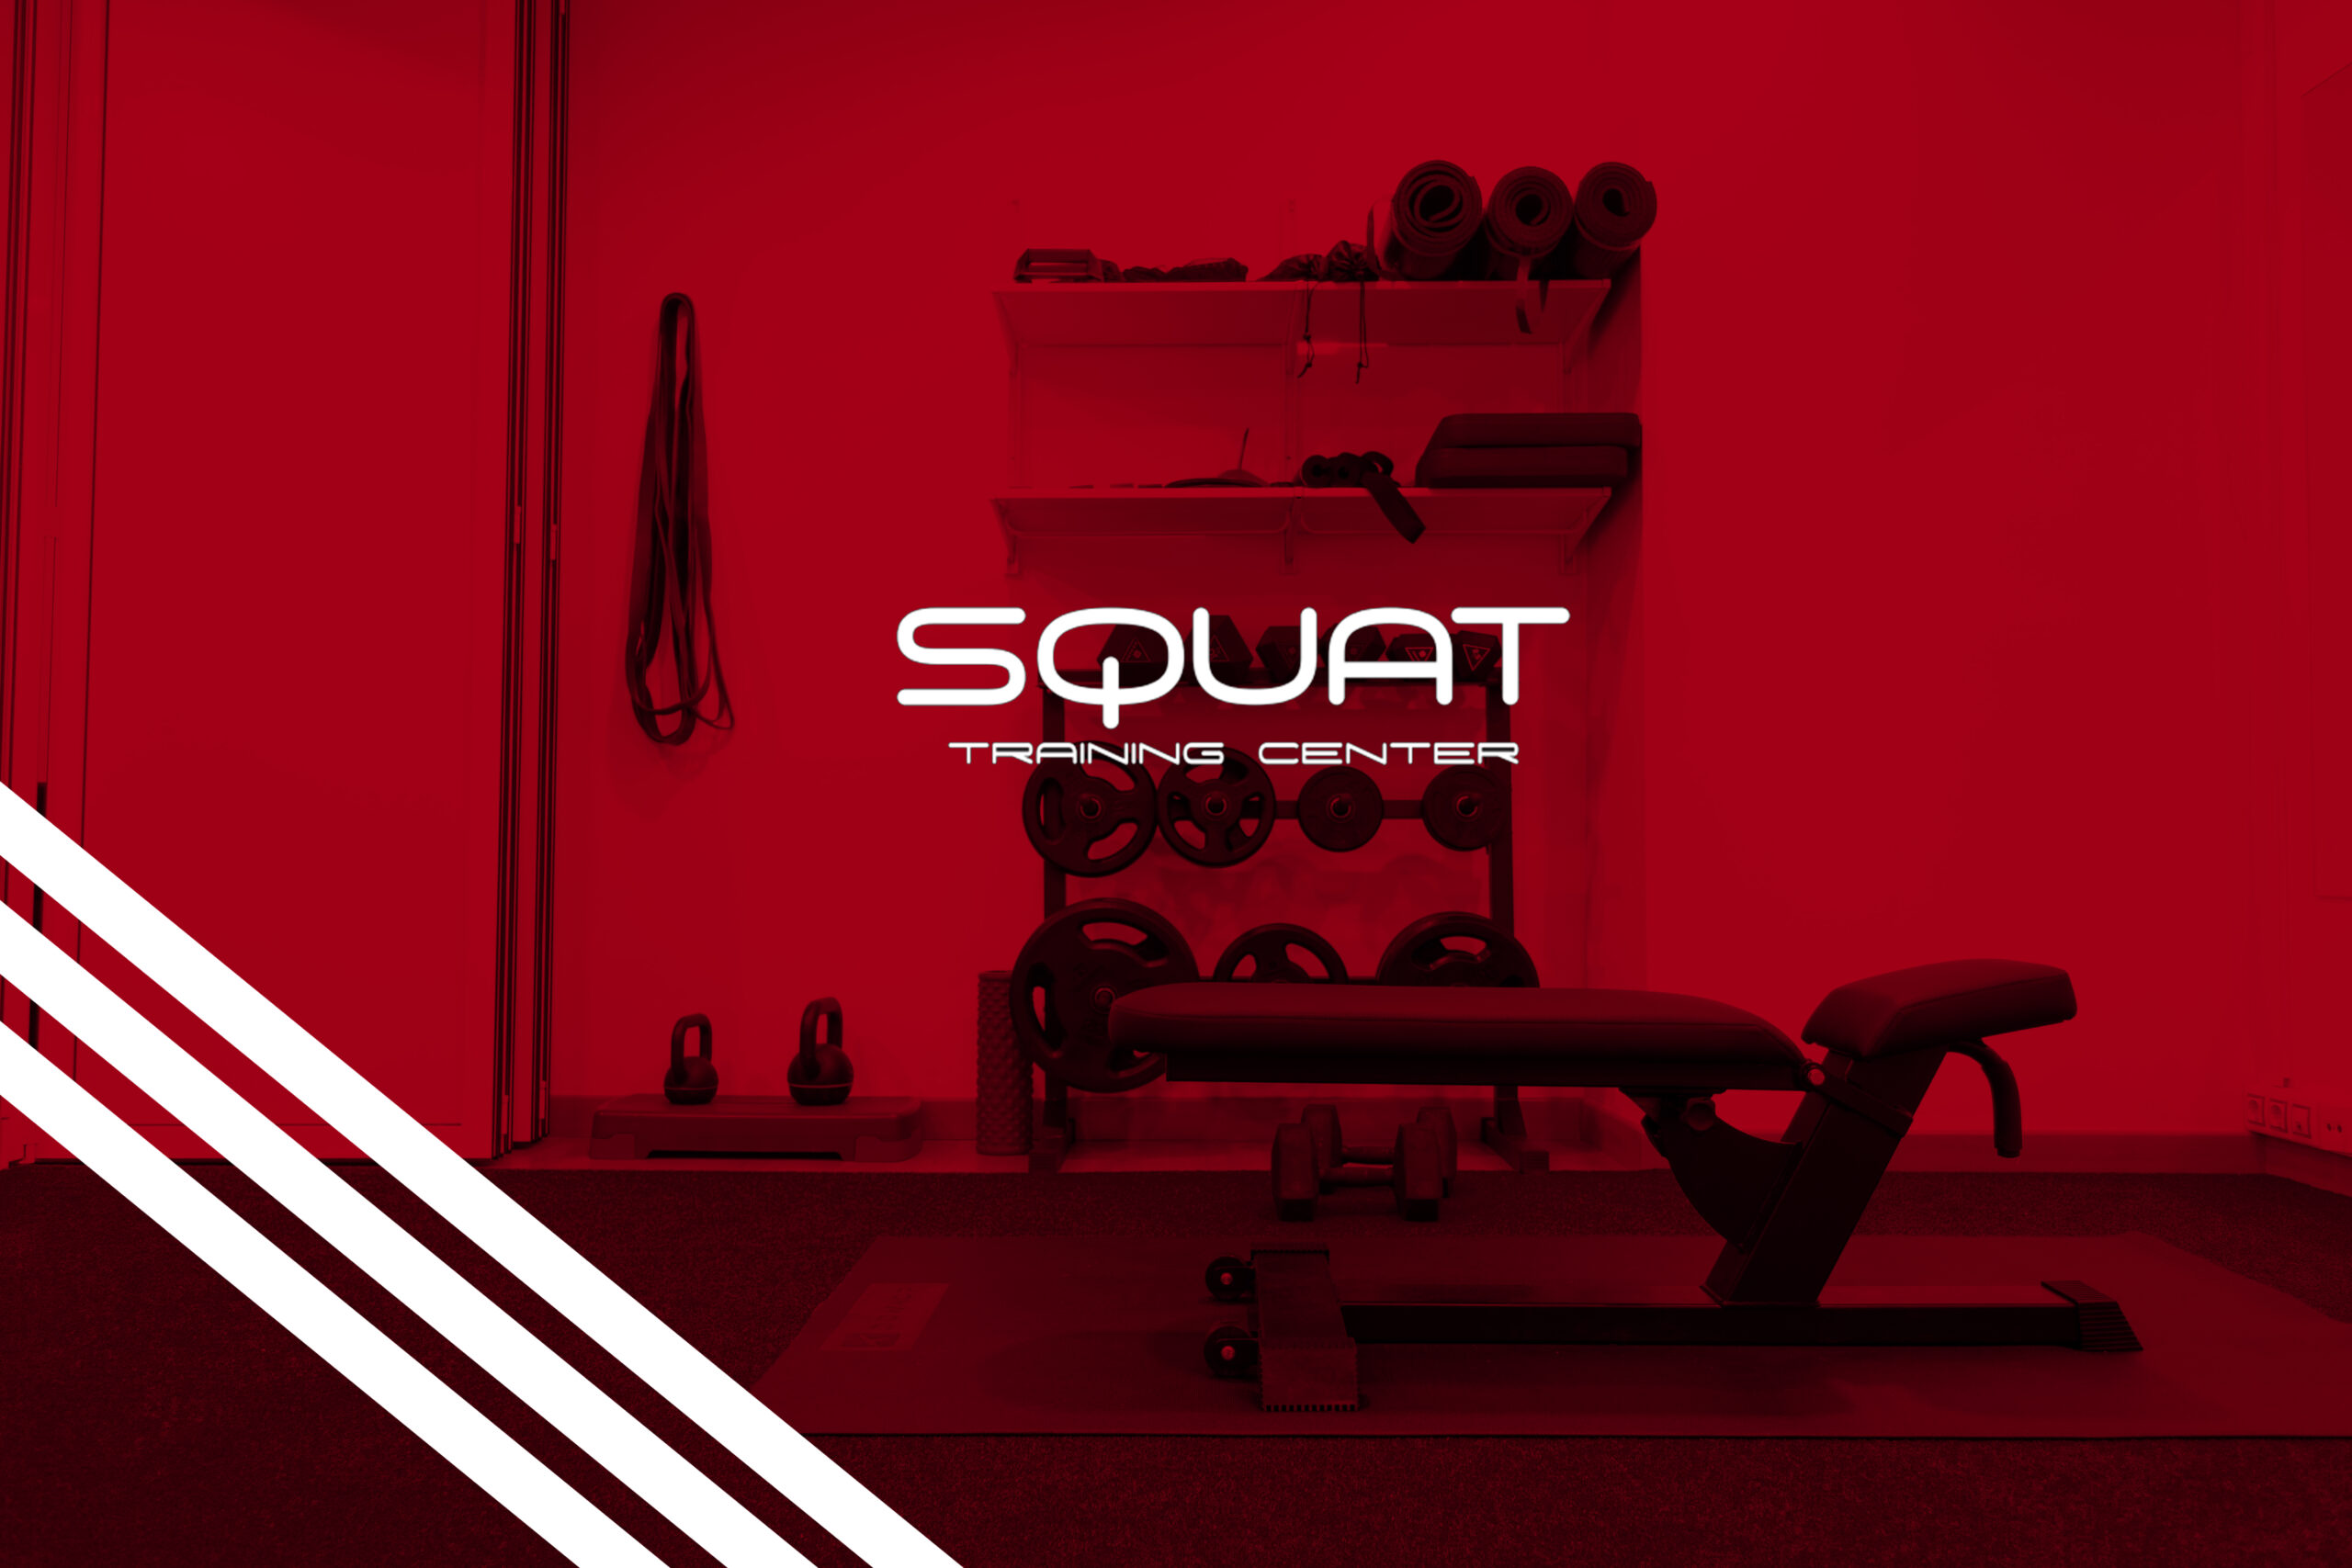 Centro entrenamiento personal squat training center